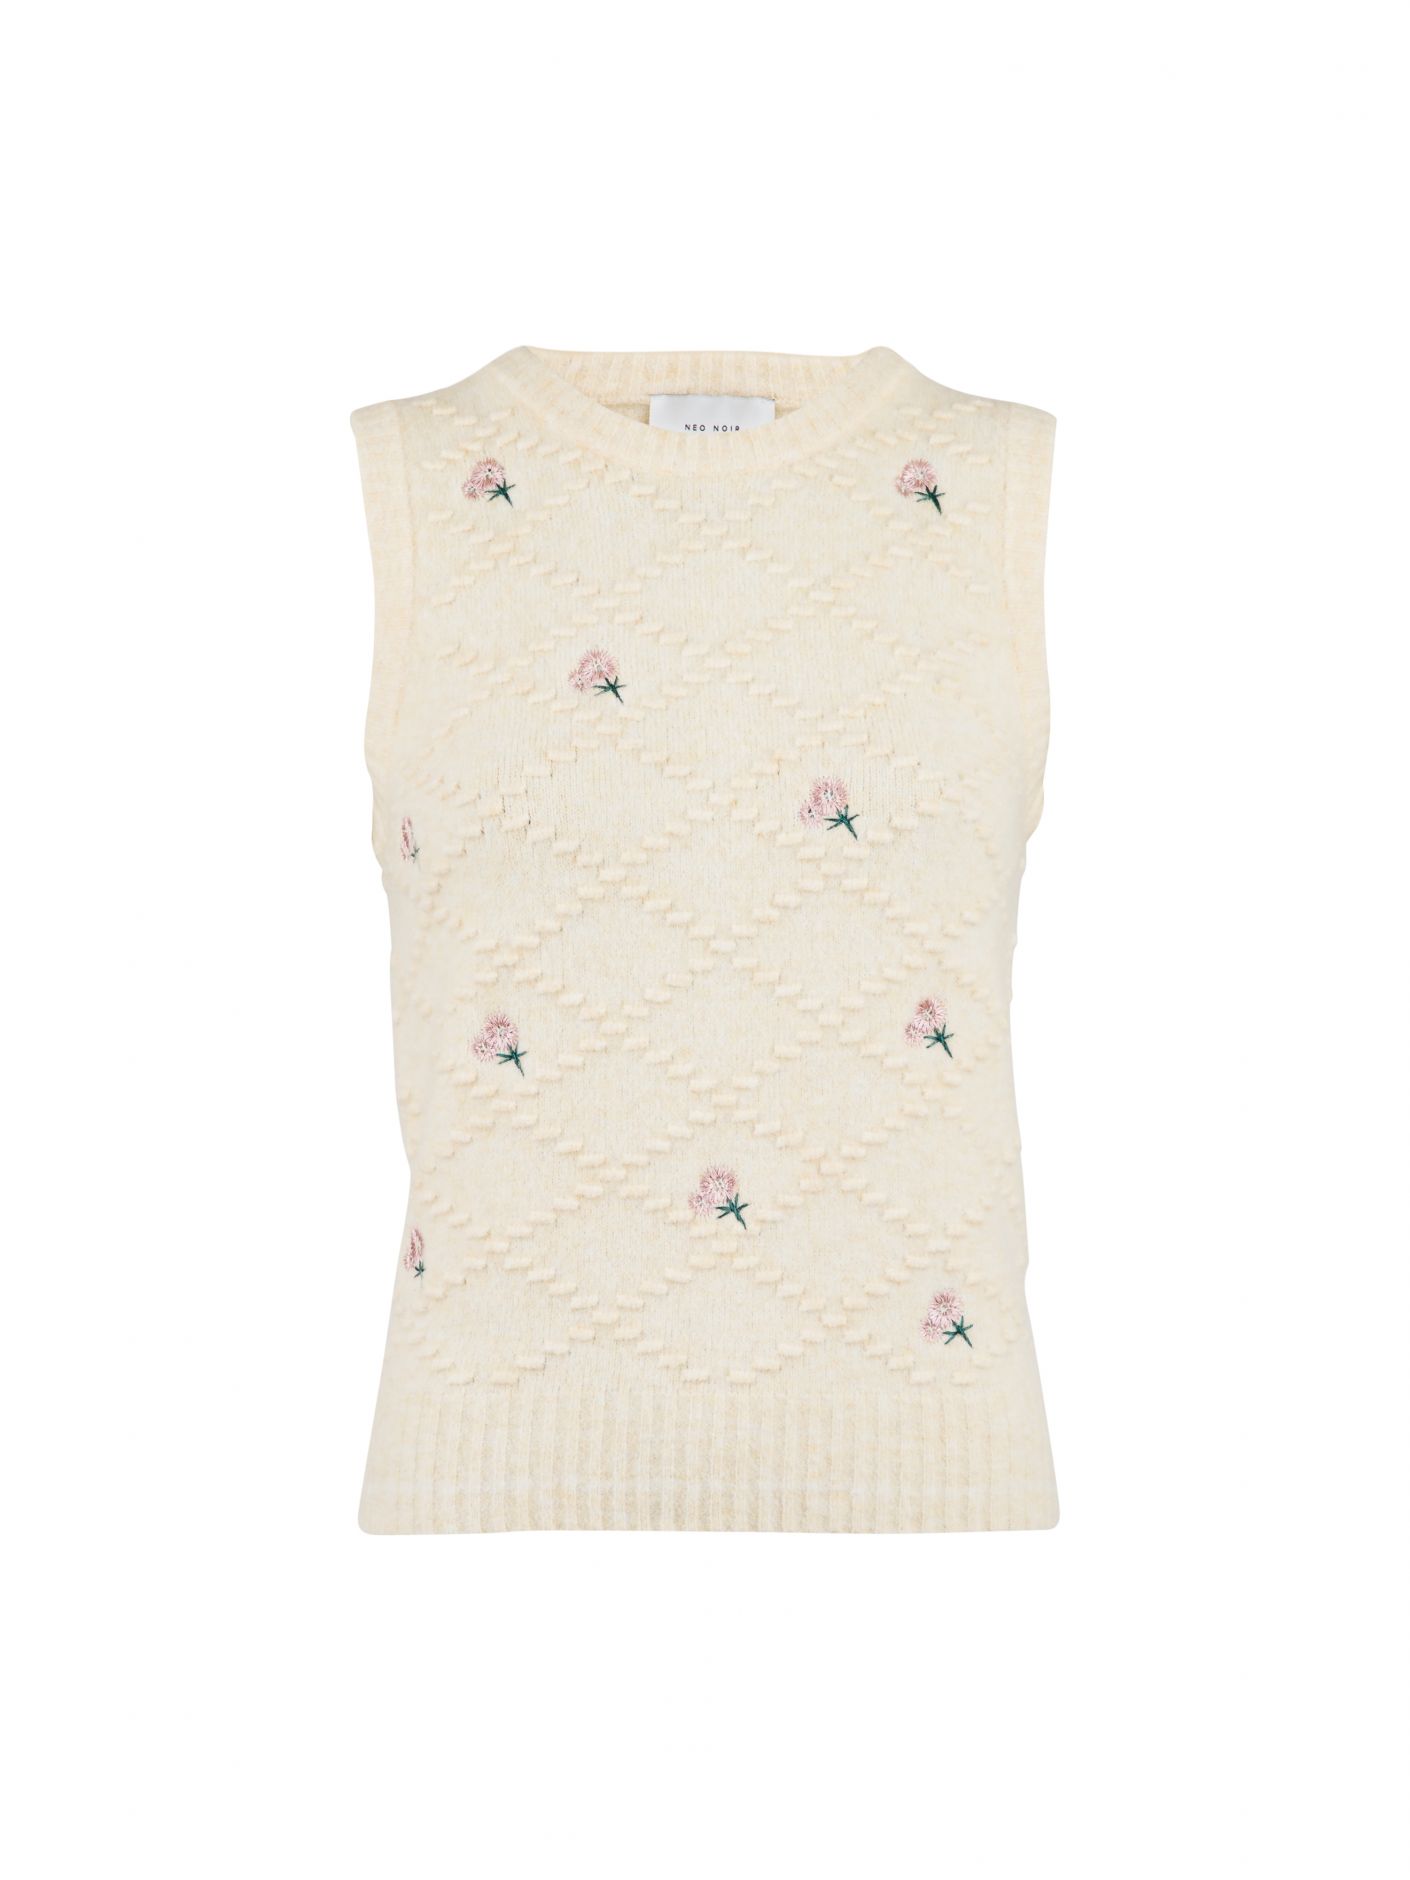 154926 franko floral knit vest